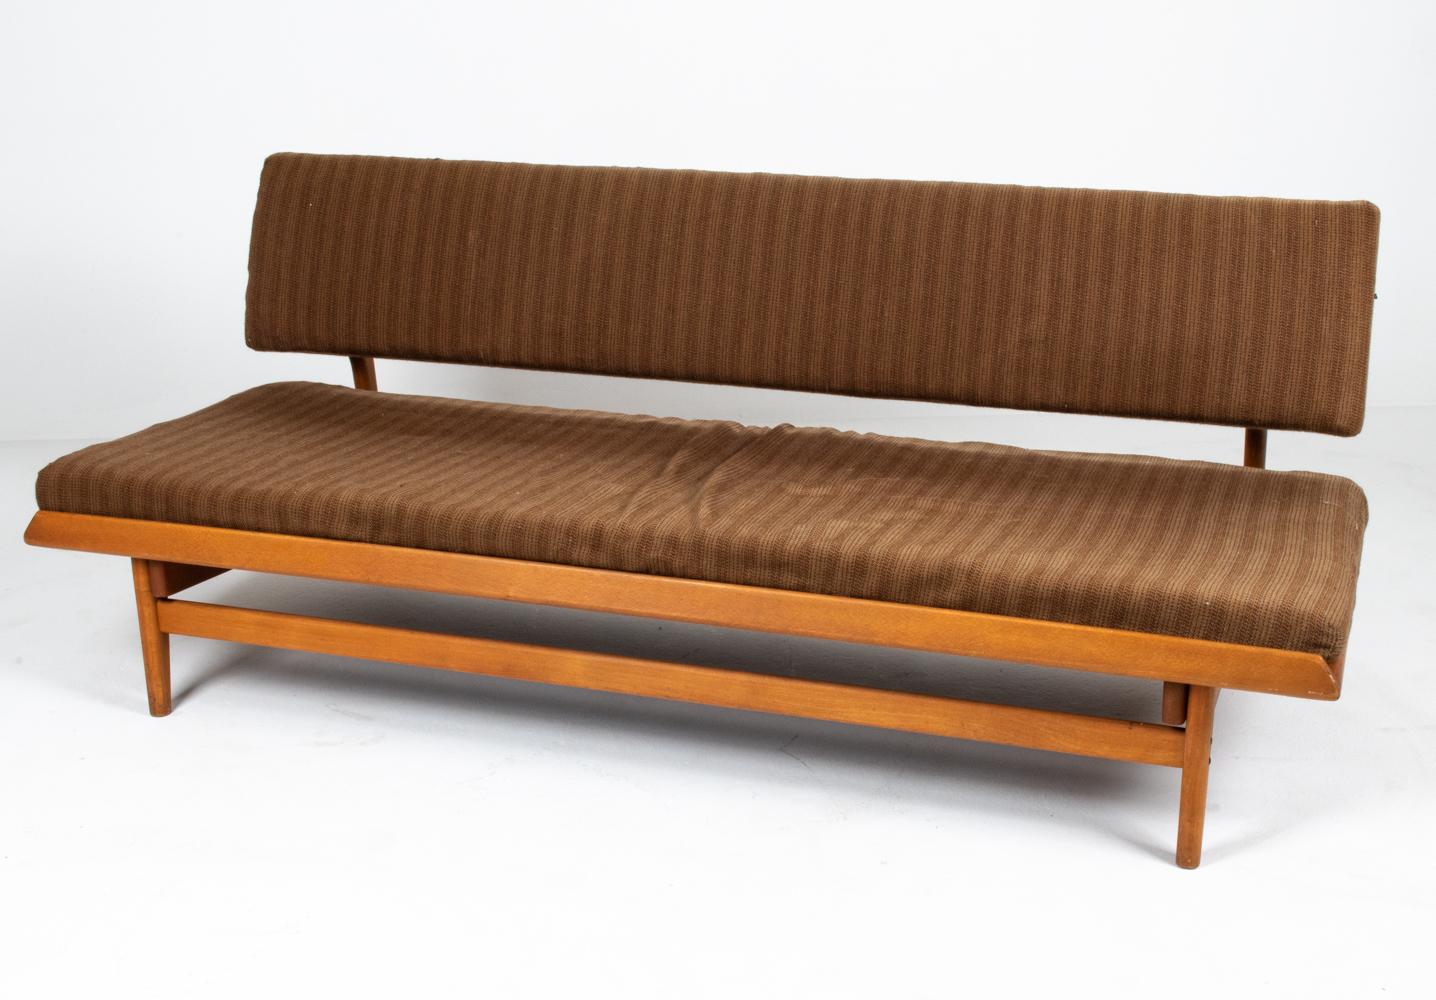 Détendez-vous avec ce canapé/lit de jour scandinave du milieu du siècle, conçu par Karl Erik Ekselius (suédois, 1914-1998) pour JOC Vetlanda Mobelfabrik, C.C., dans les années 1960. Ce modèle minimaliste et polyvalent est doté d'un mécanisme